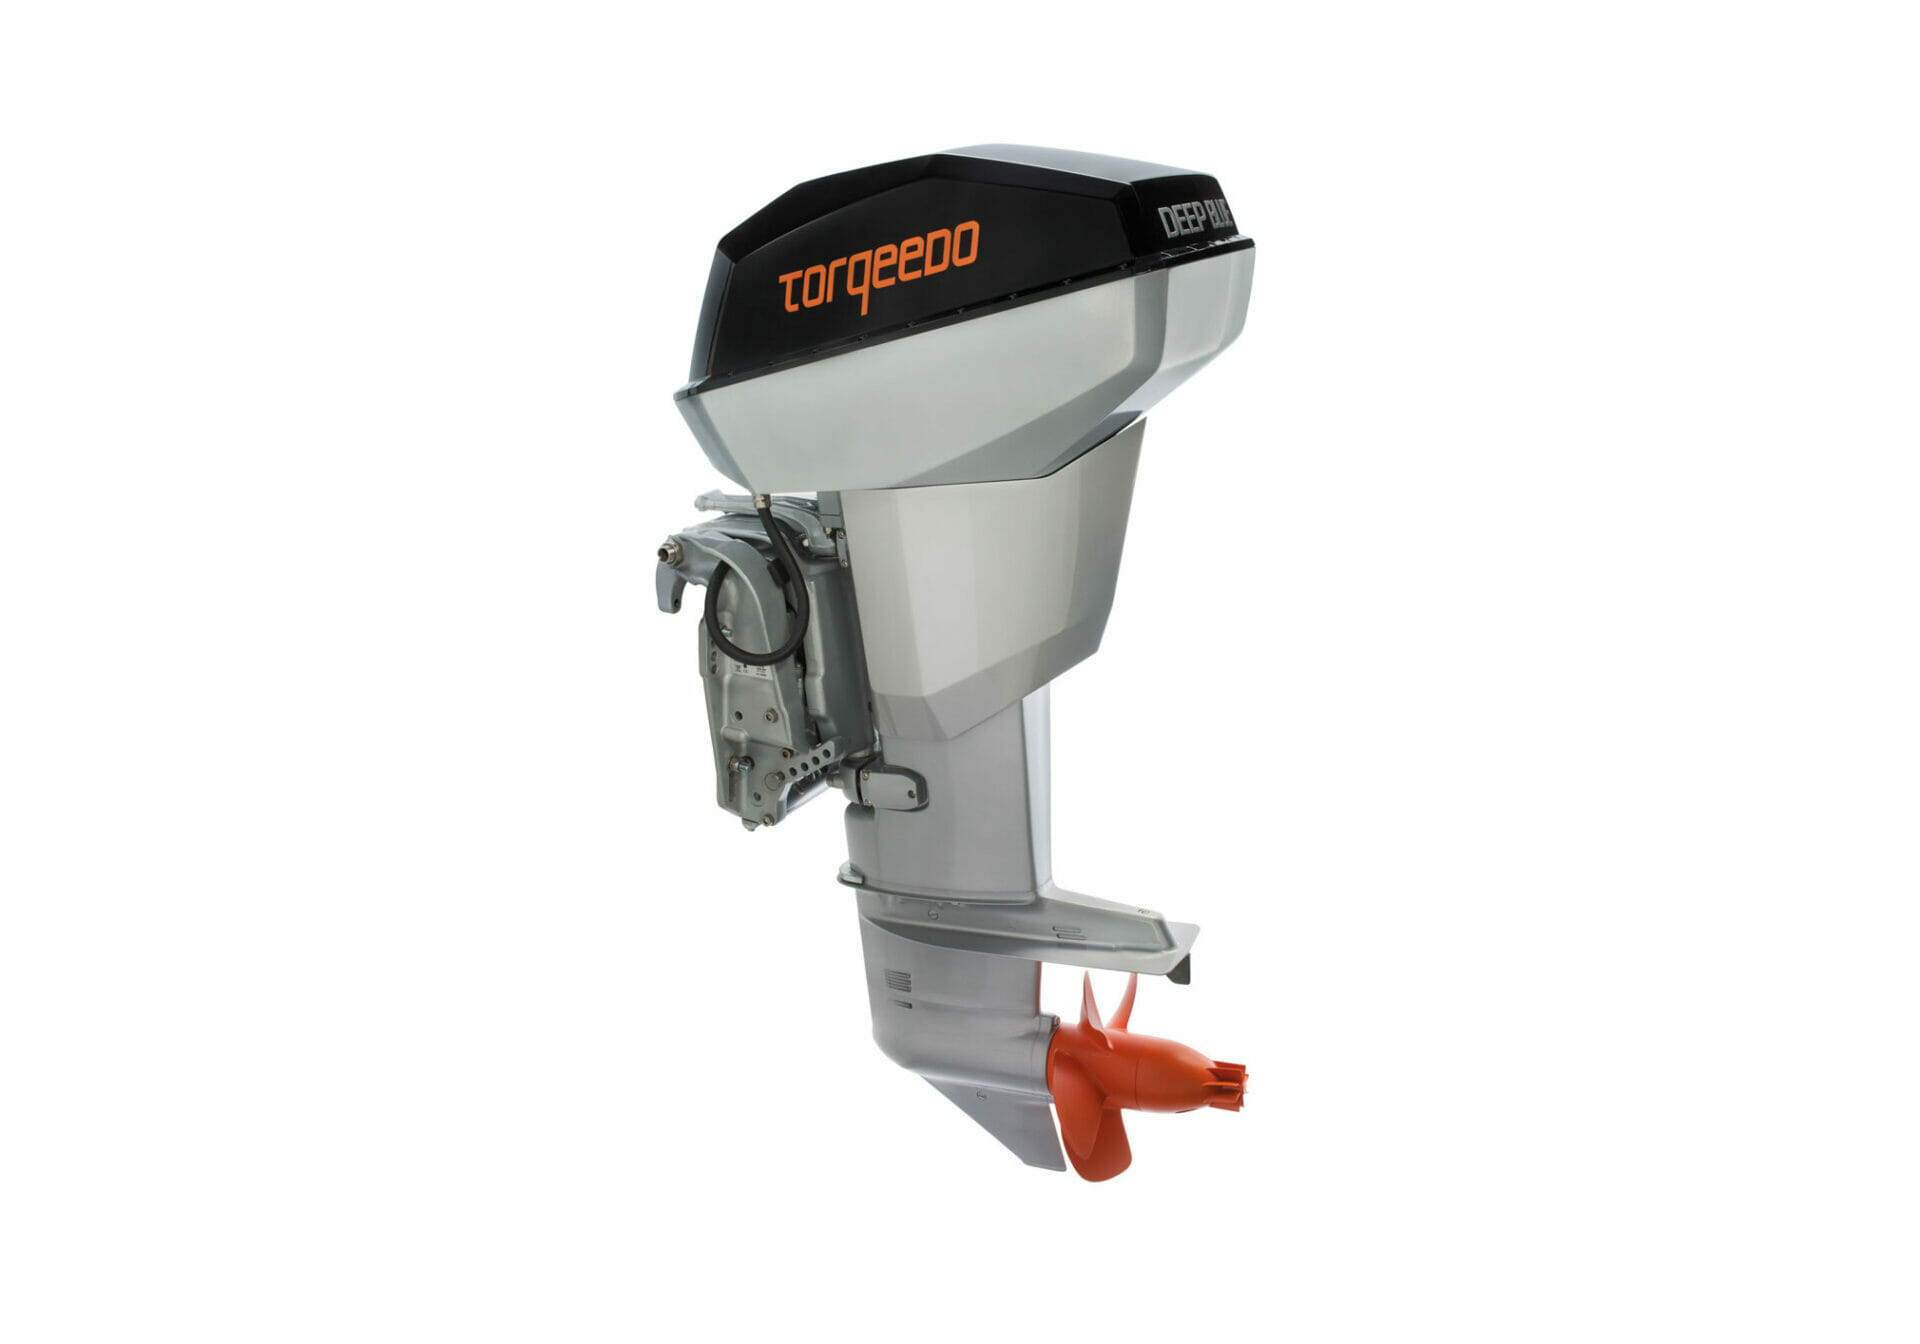 Torqeedo Electric Outboard Motors